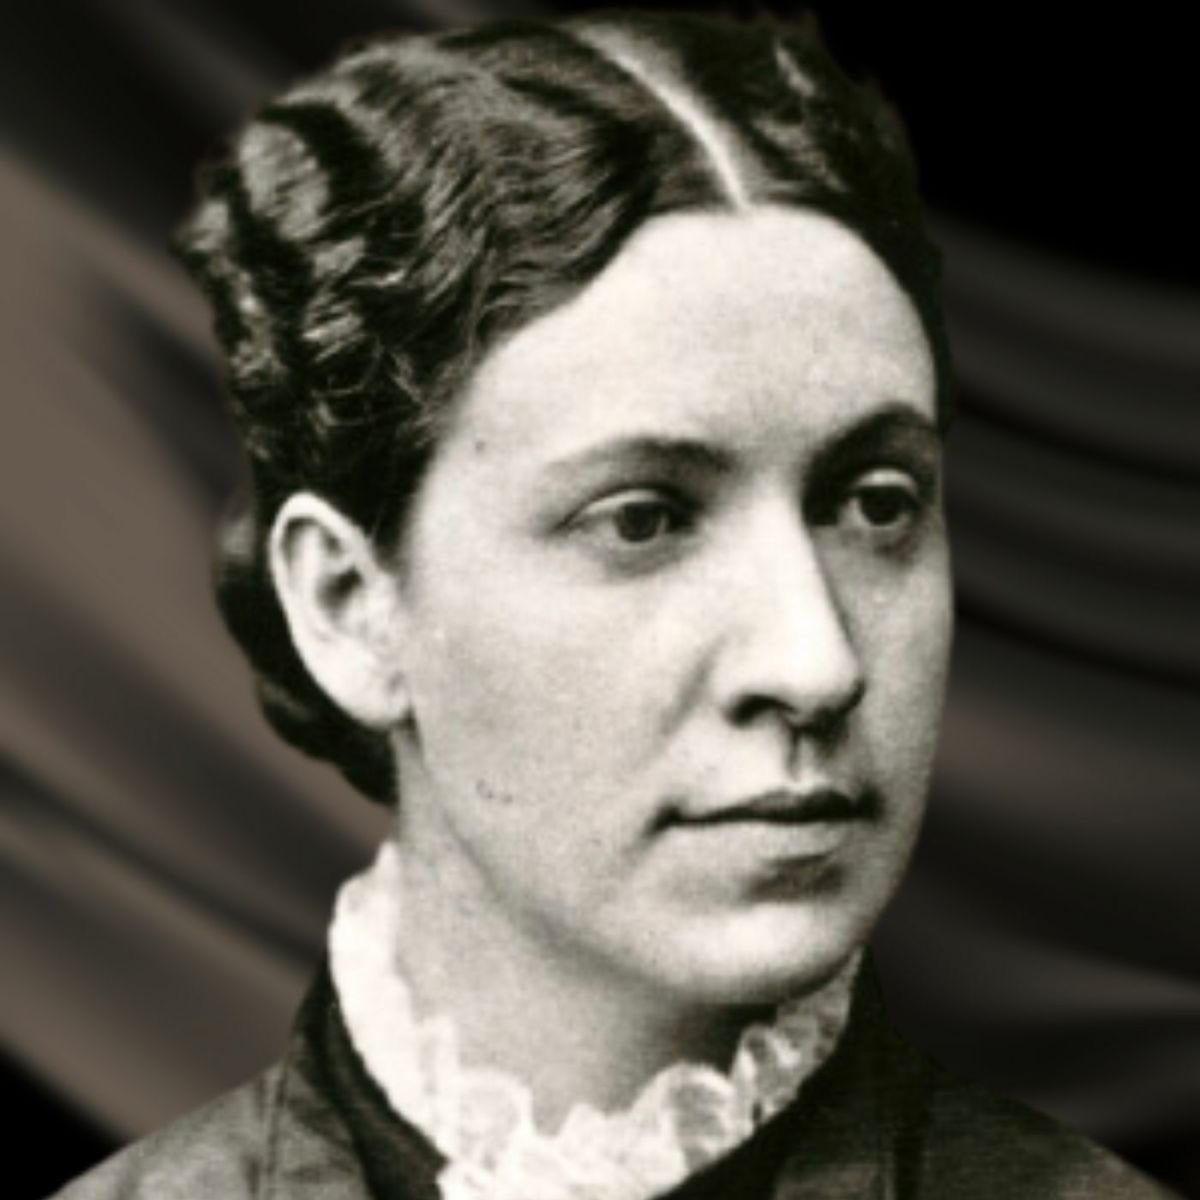 Emma Borden, Lizzie's older sister